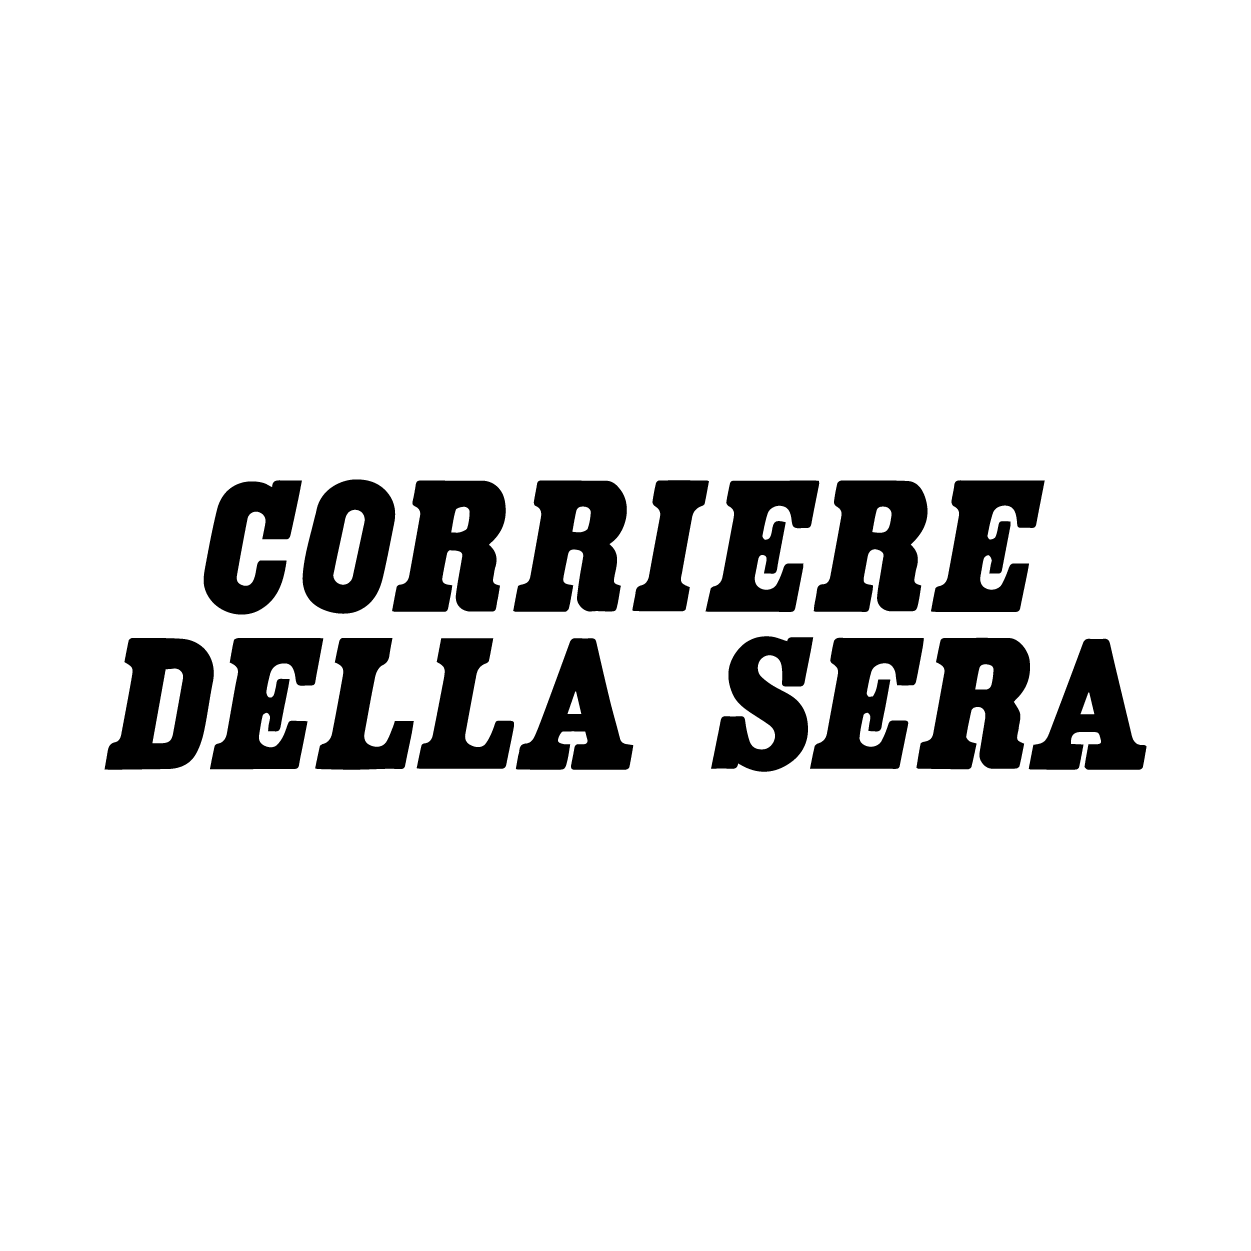 corriere-della-sera-logo